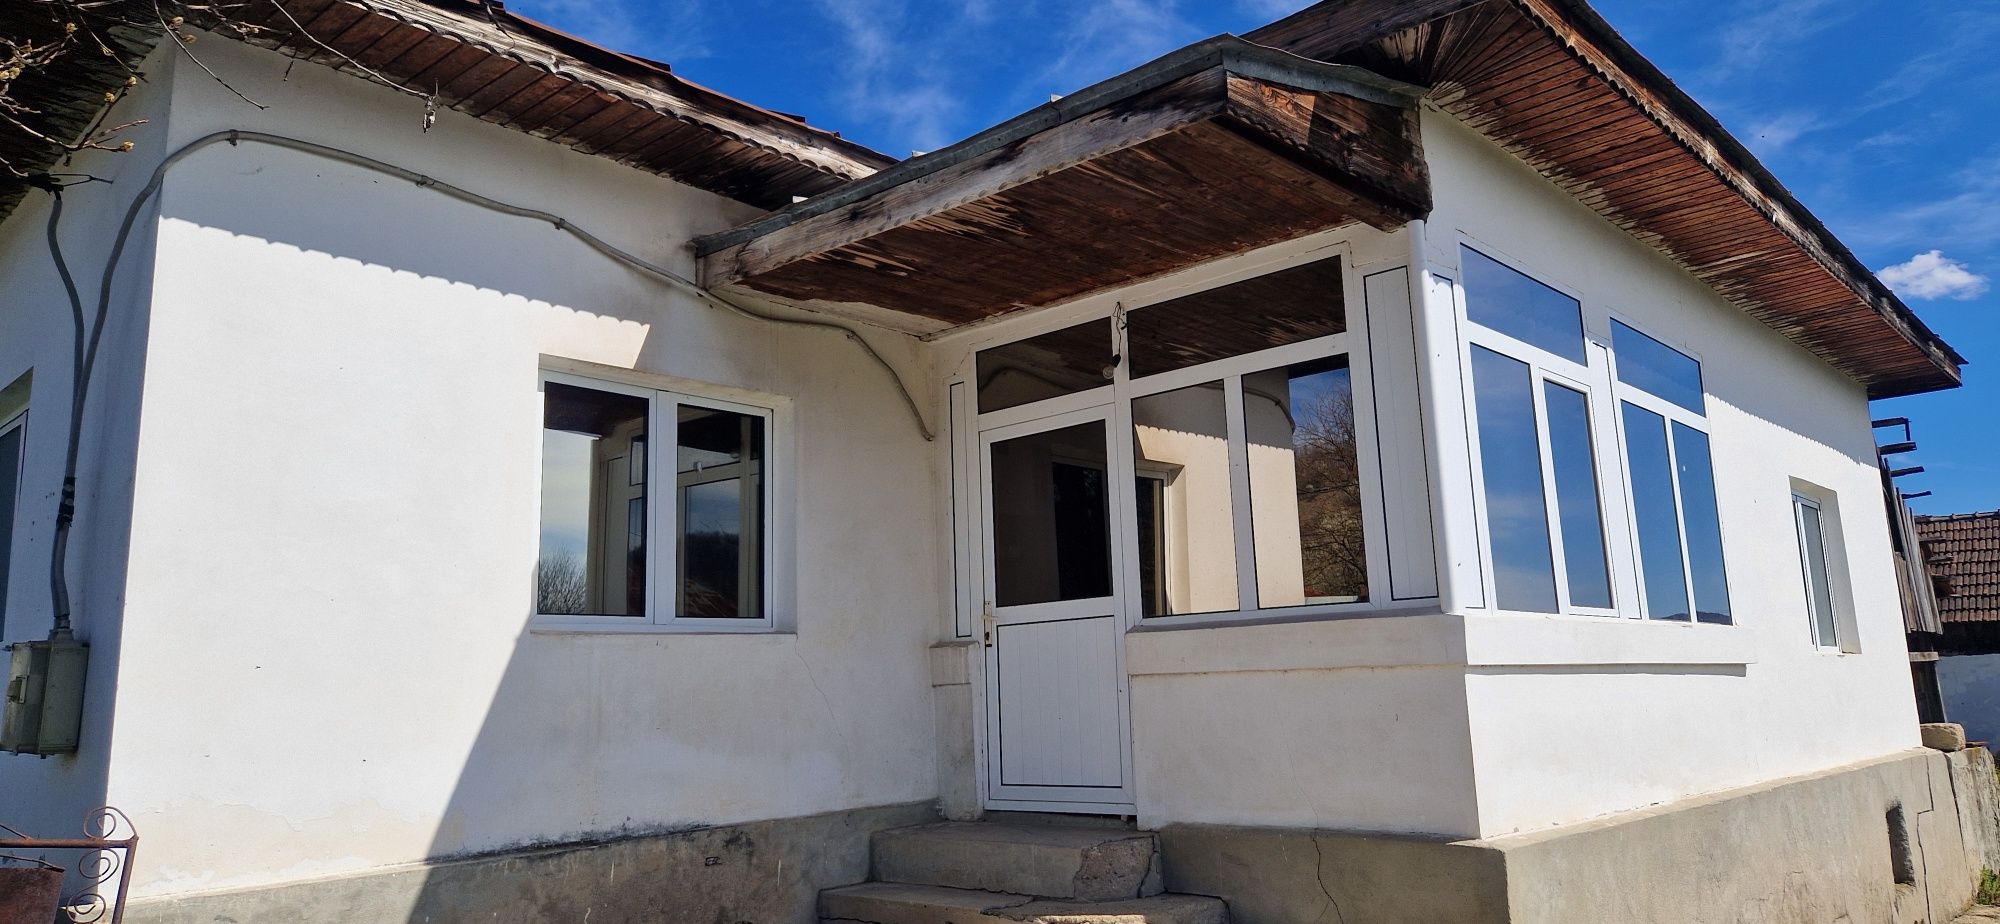 Casă + teren  de vânzare,comuna Săulești, sat Bibești.